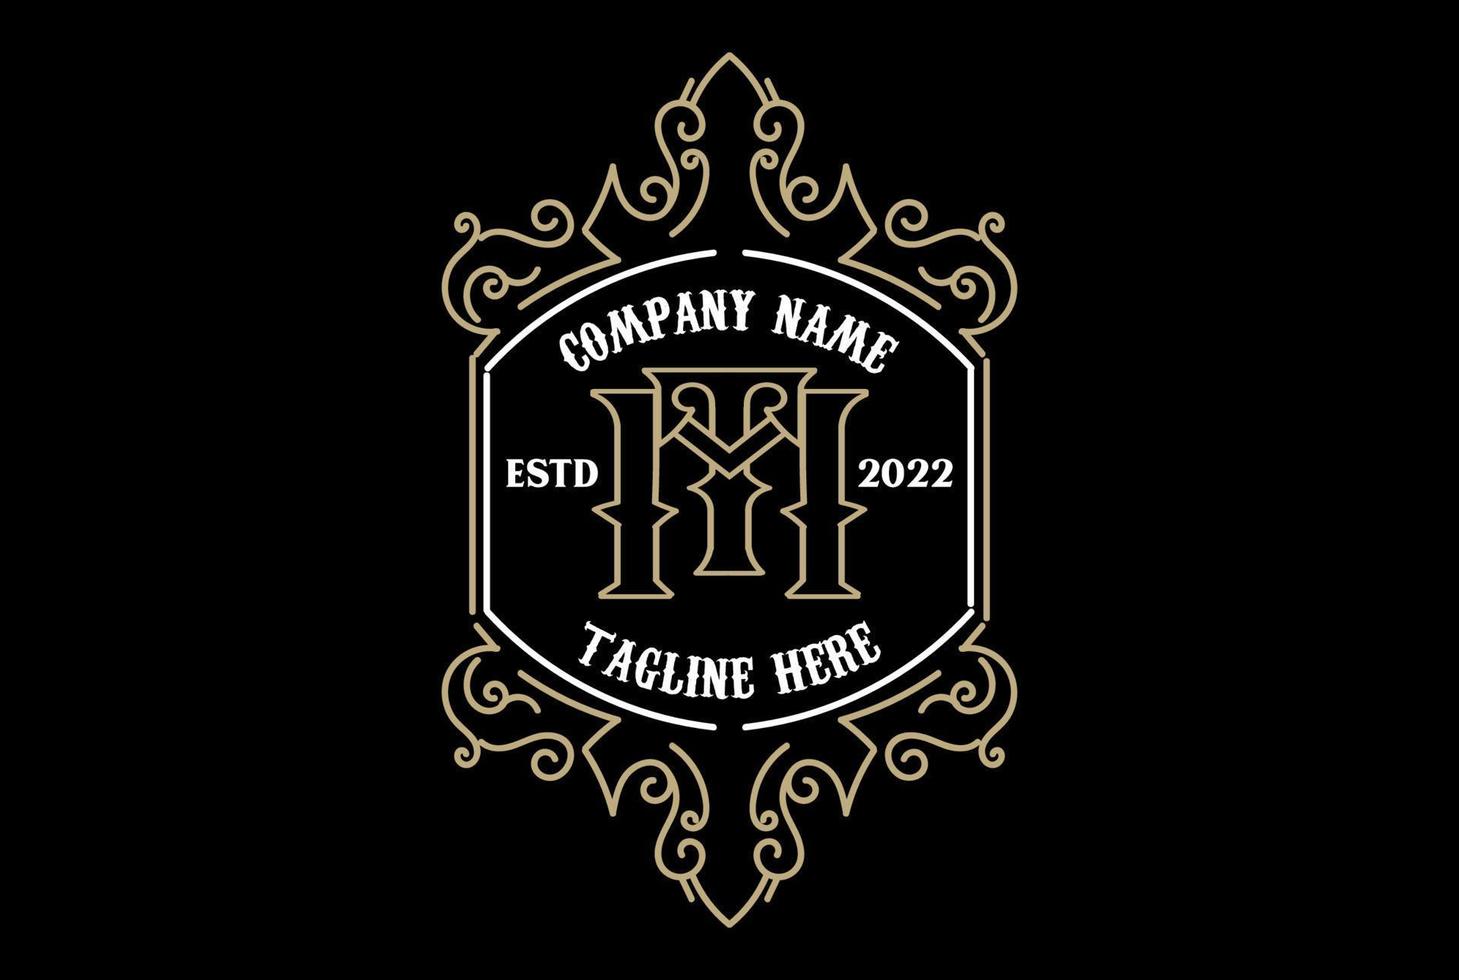 Vintage Retro Old Royal Initial Letter TM MT Badge Emblem Label Logo Design vector